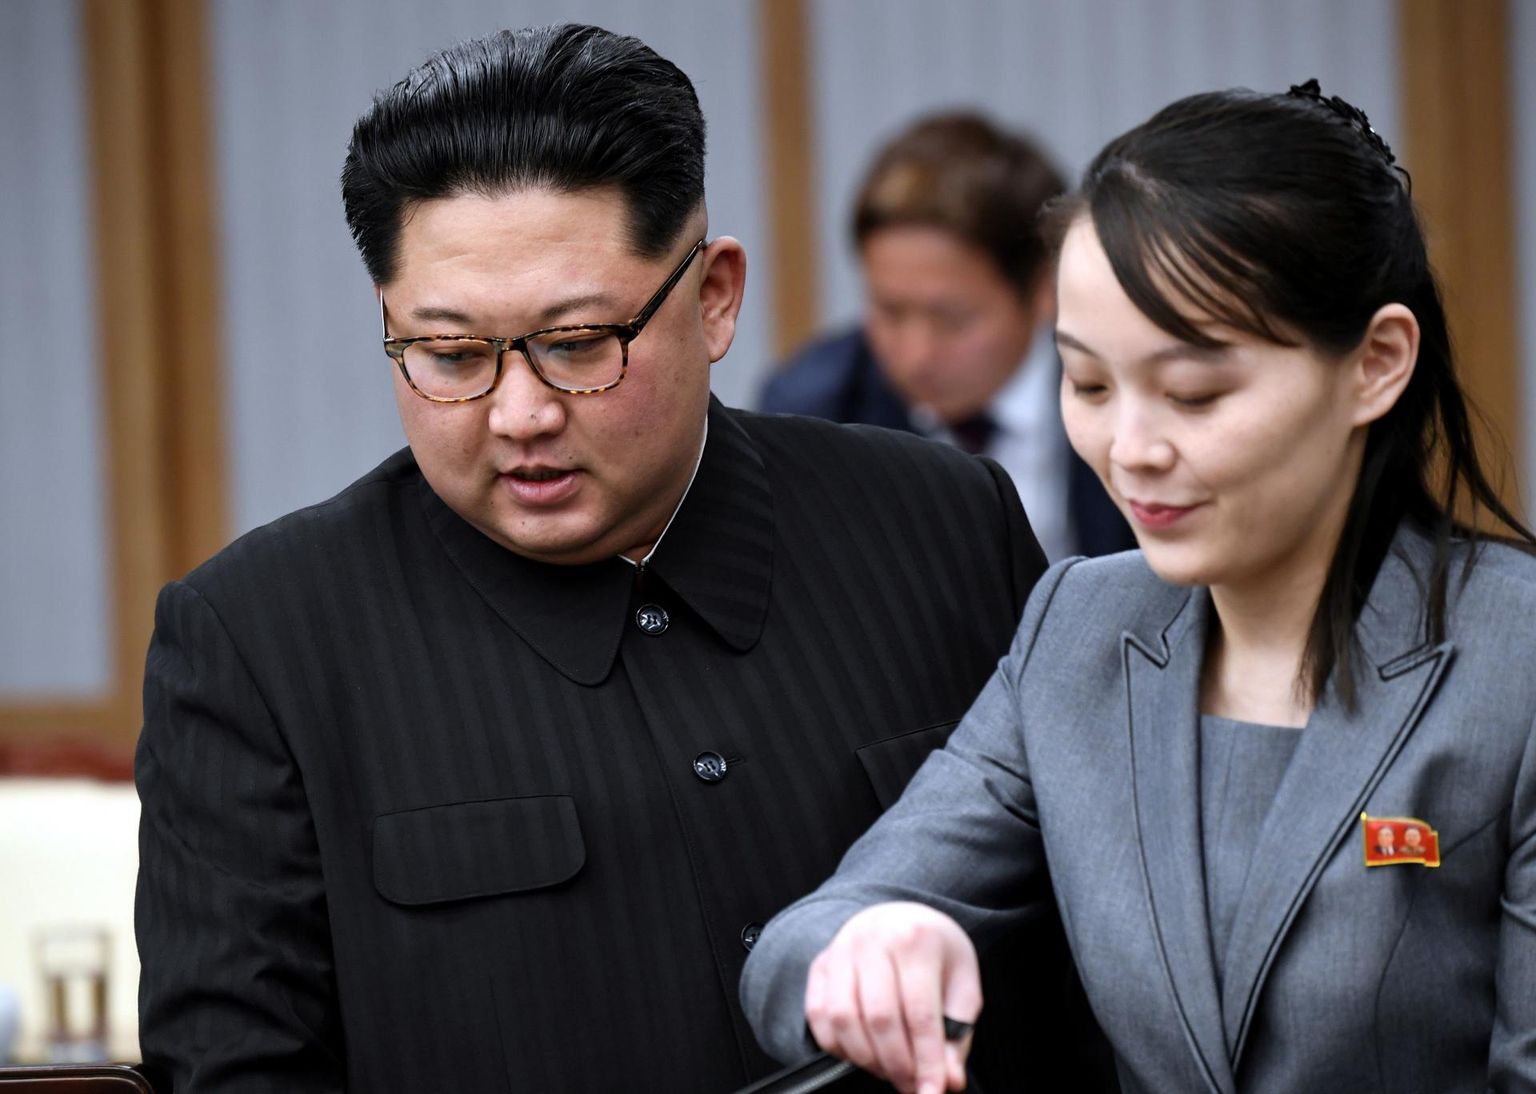 Põhja-Korea diktaator Kim Jong-un (vasakul) koos oma õe Kim Yo-jongiga Panmunjomi rahukülas 2018. aastal. Diktaatori kadumise järel räägitakse tema õest kui võimalikust uuest riigijuhist.